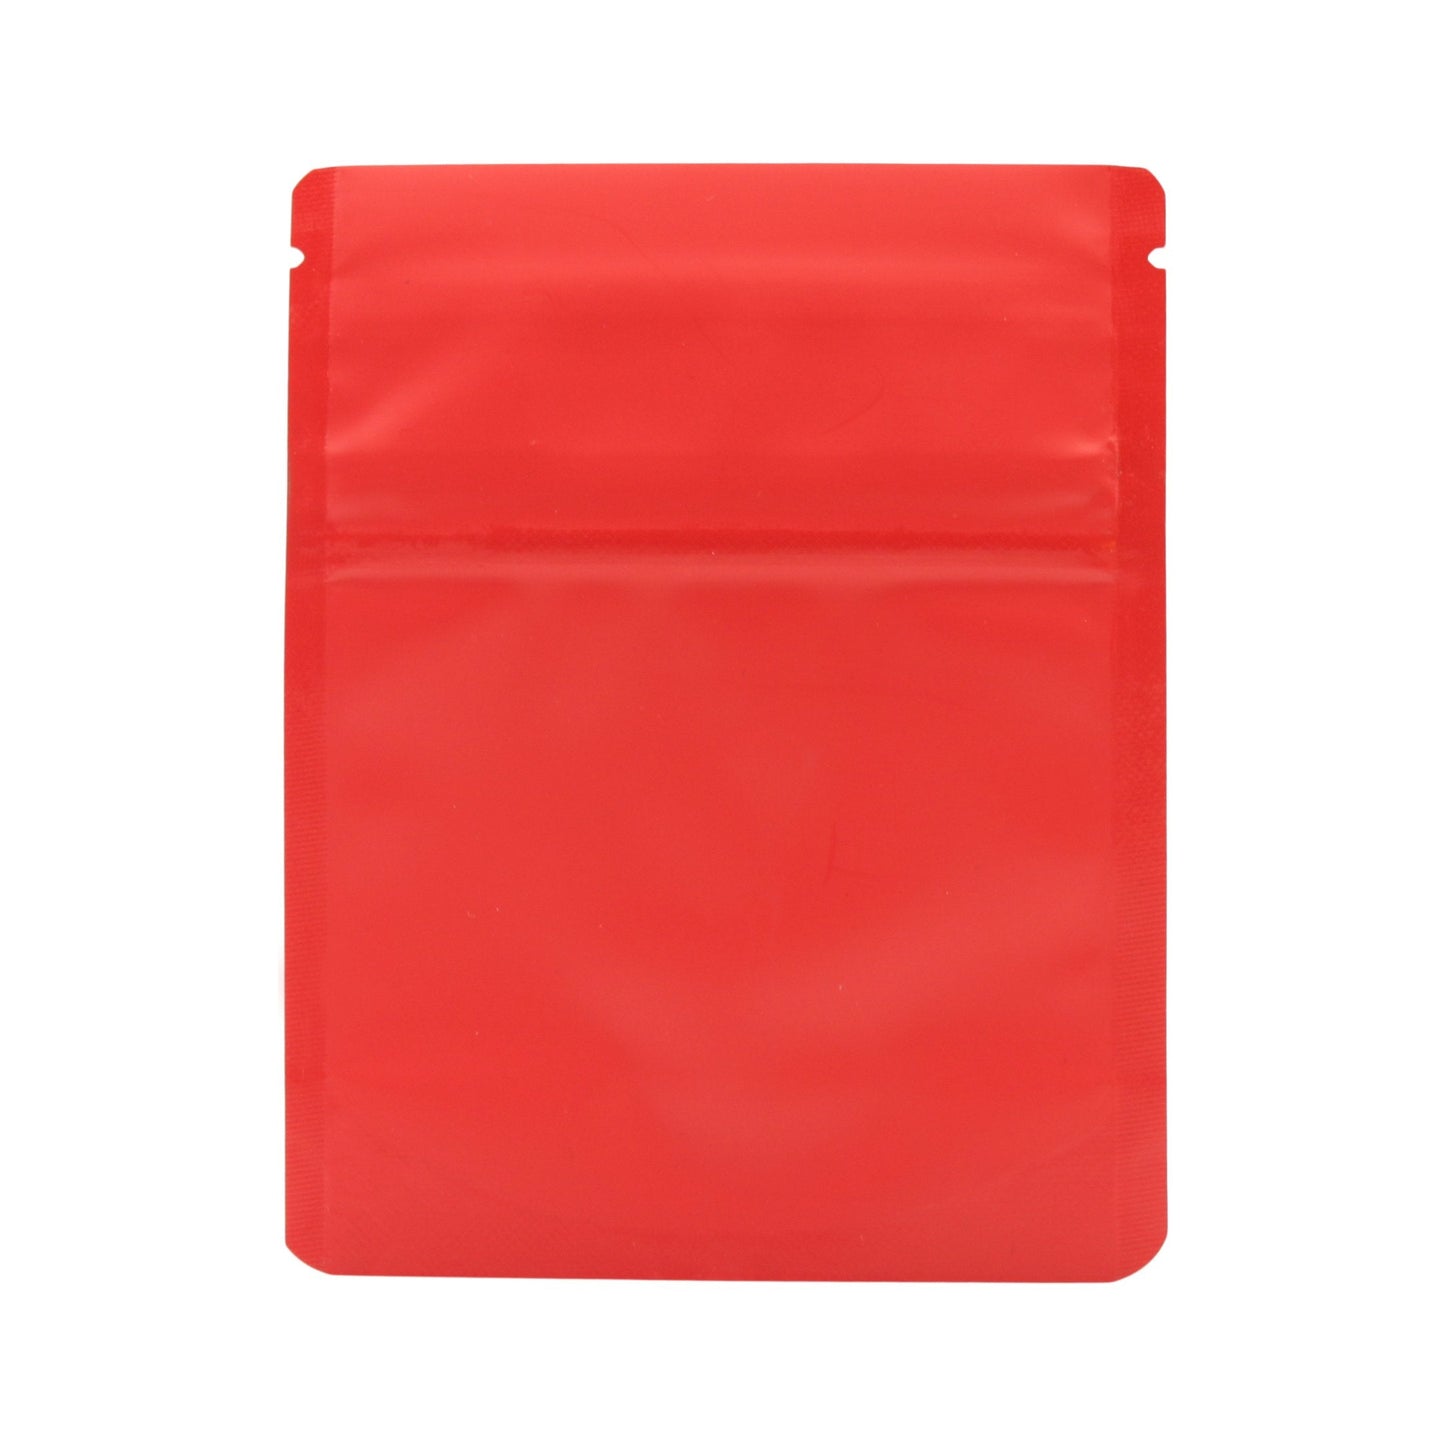 Matte Red Bag King Child-Resistant Opaque Mylar Bag (1 gram)